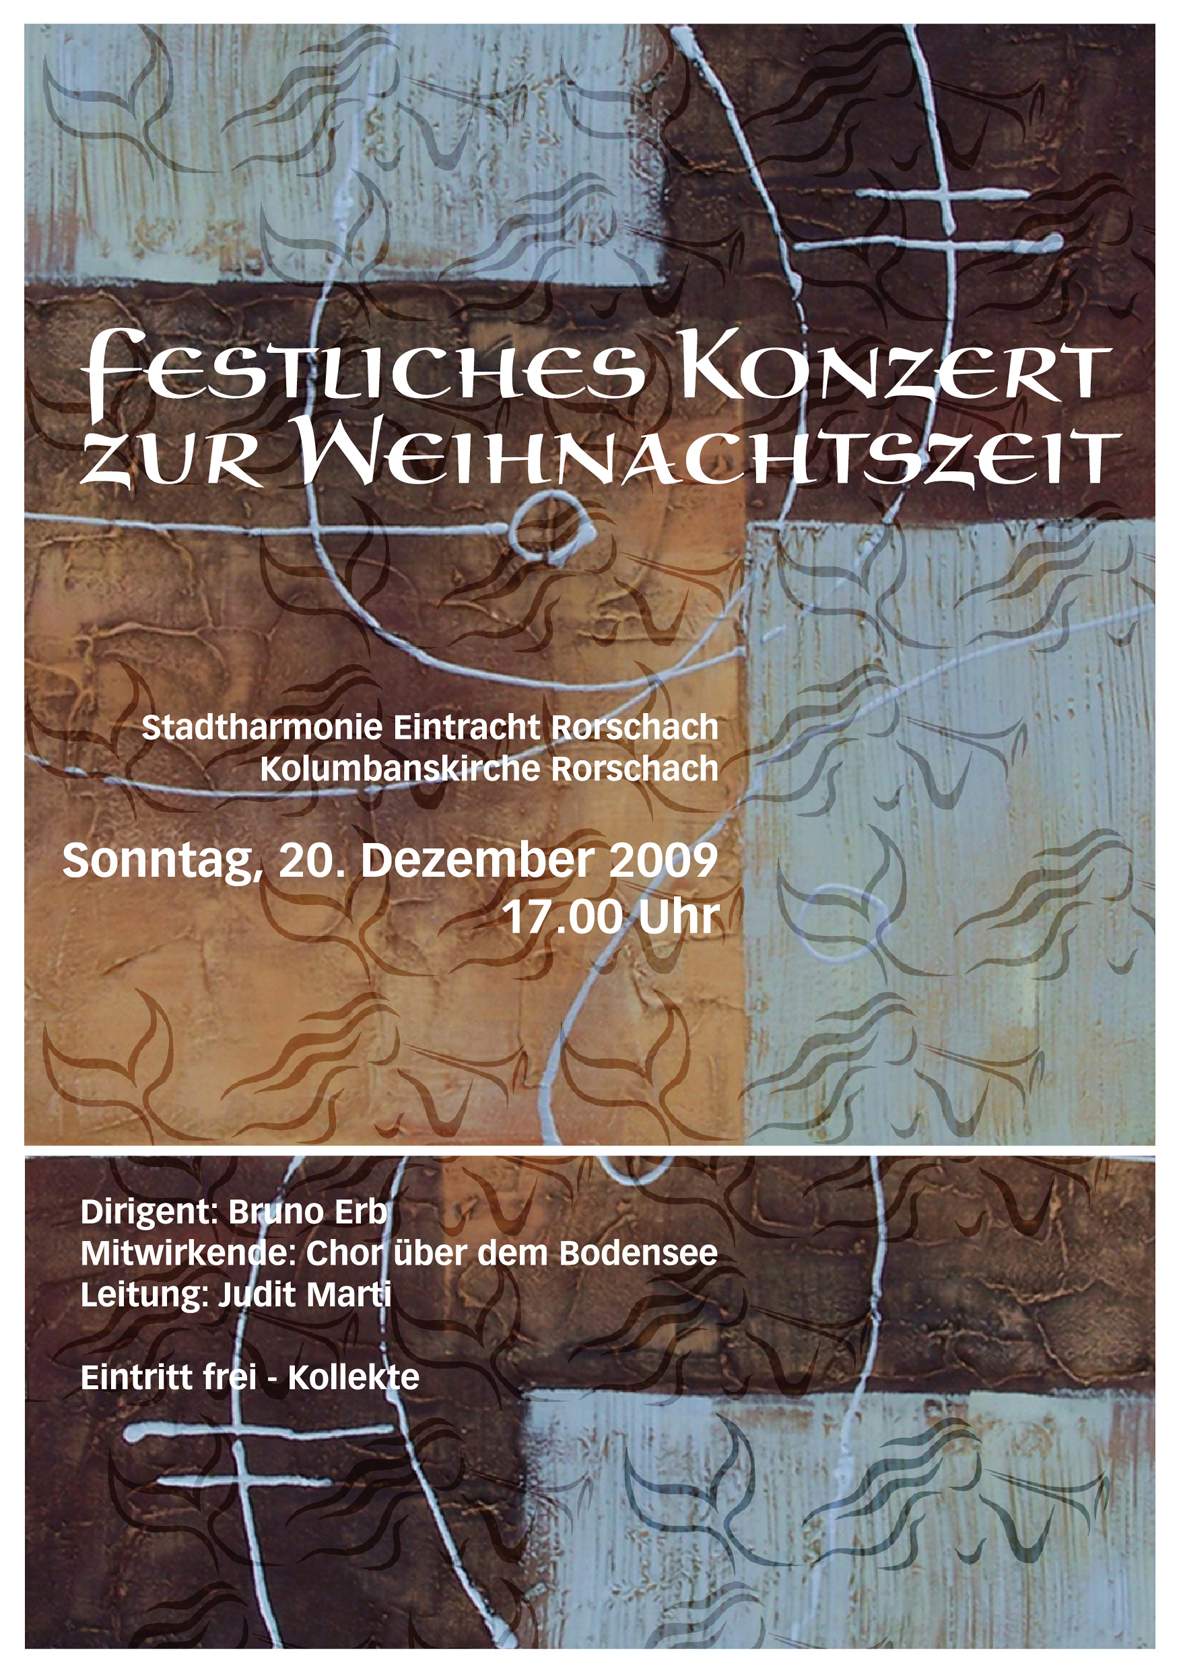 Titelblatt des Programm-Flyers für das festliche Konzert zur Weihnachtszeit 2009 der Stadtharmonie Eintracht Rorschach